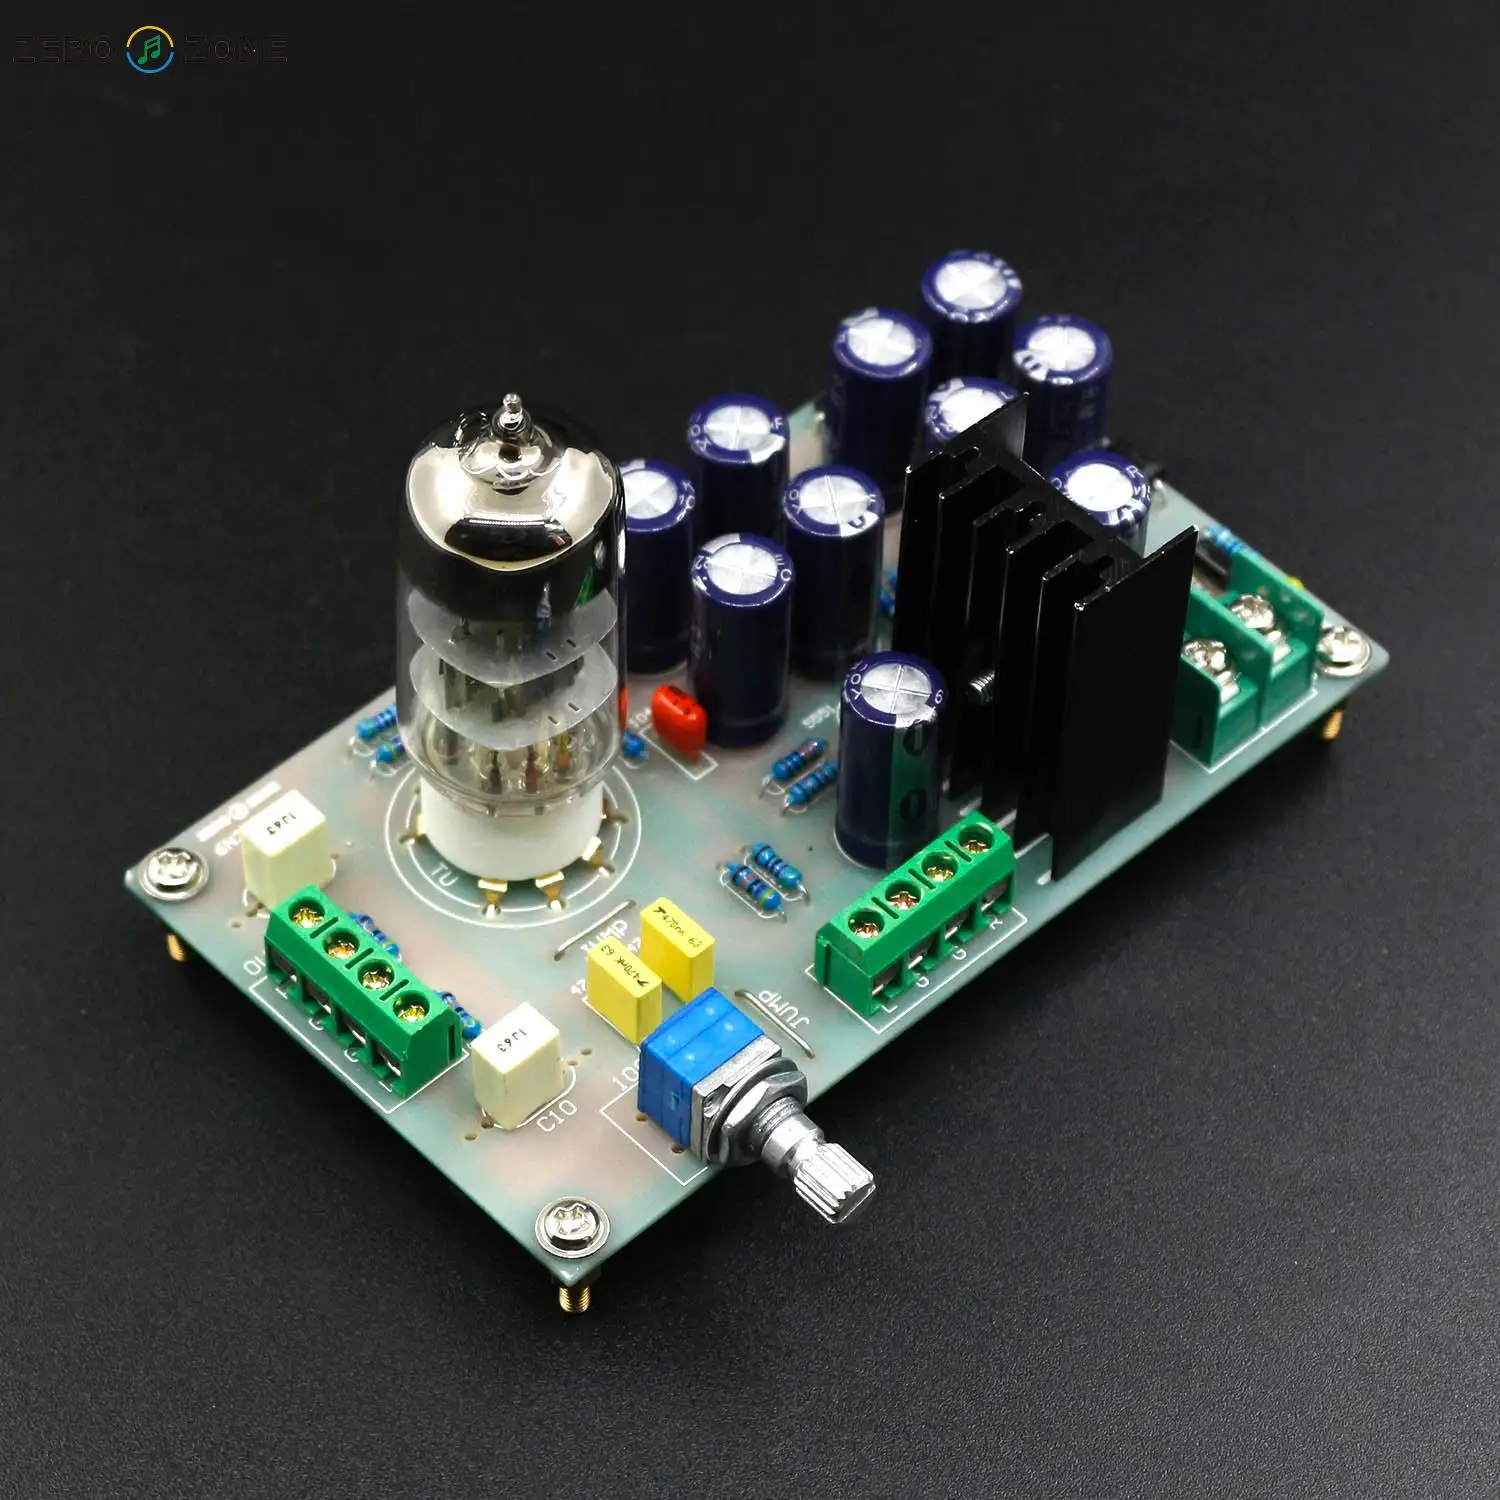 pre amp 6N3 Amplifier Kit / Board 6N3 Tube Buffer Audio Preamplifier Pre AMP Kit For DIY Mini Amplifier